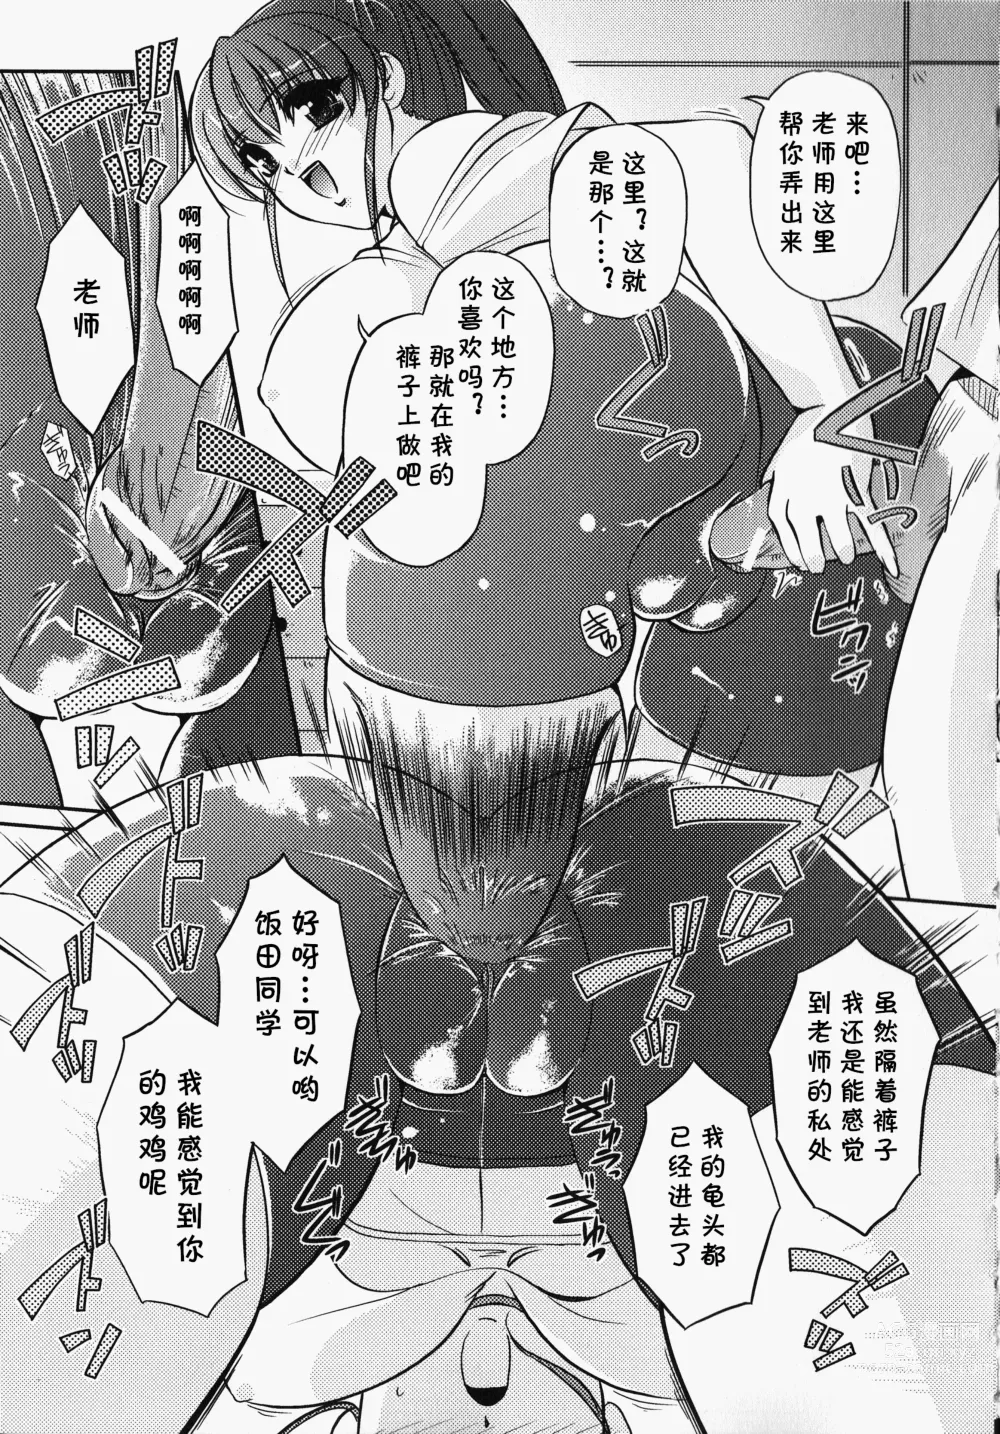 Page 8 of manga Bokura no Sensei  to  Himitsu  Jisshuu